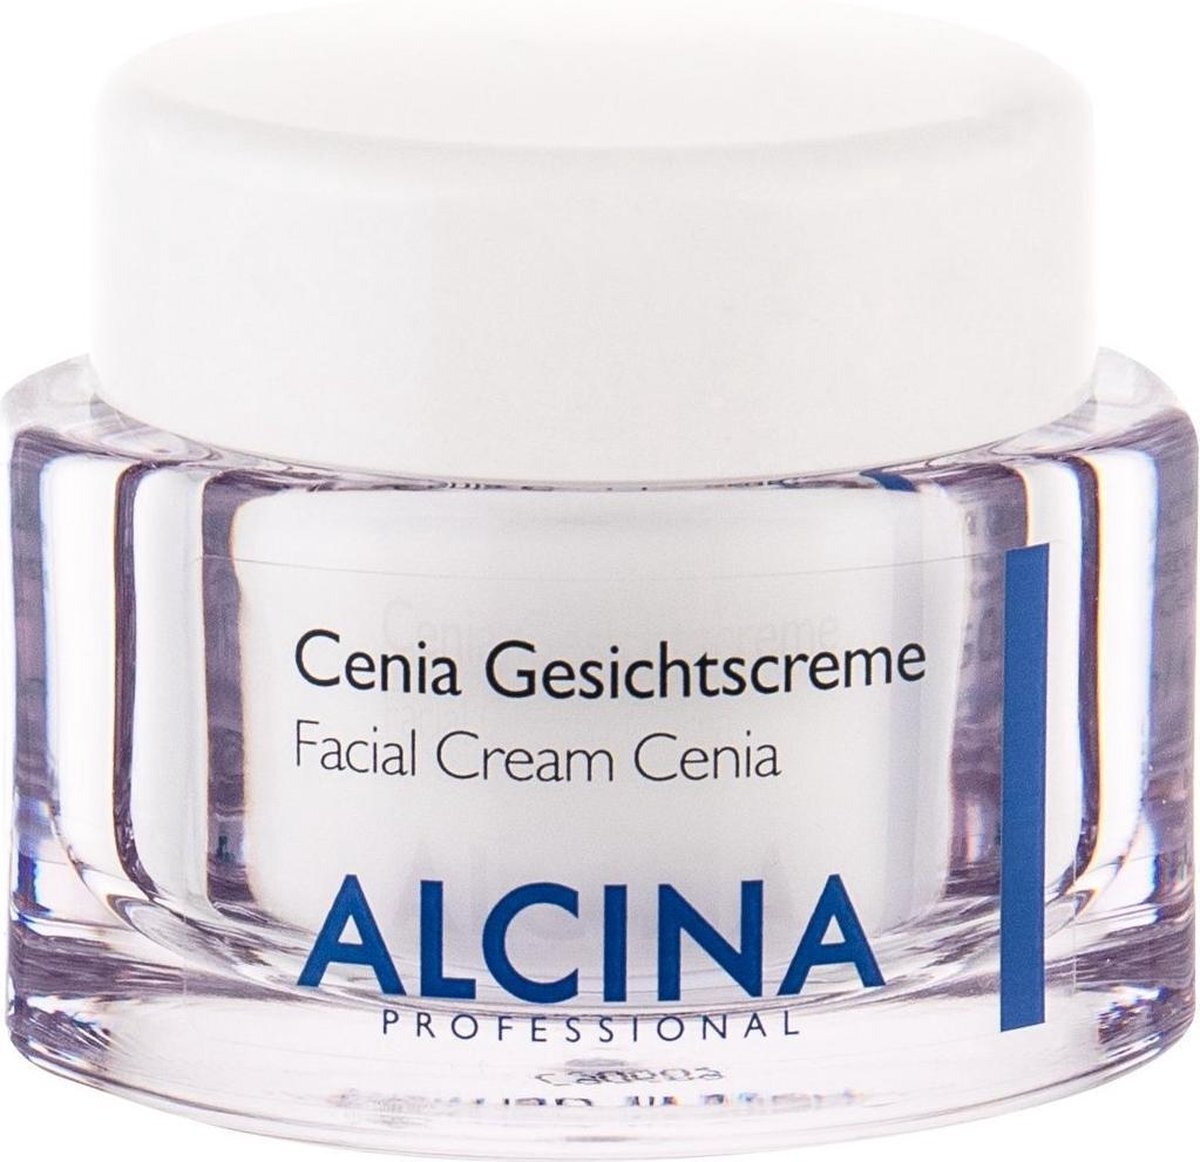 Alcina Cenia gezichtscrème 50 ml